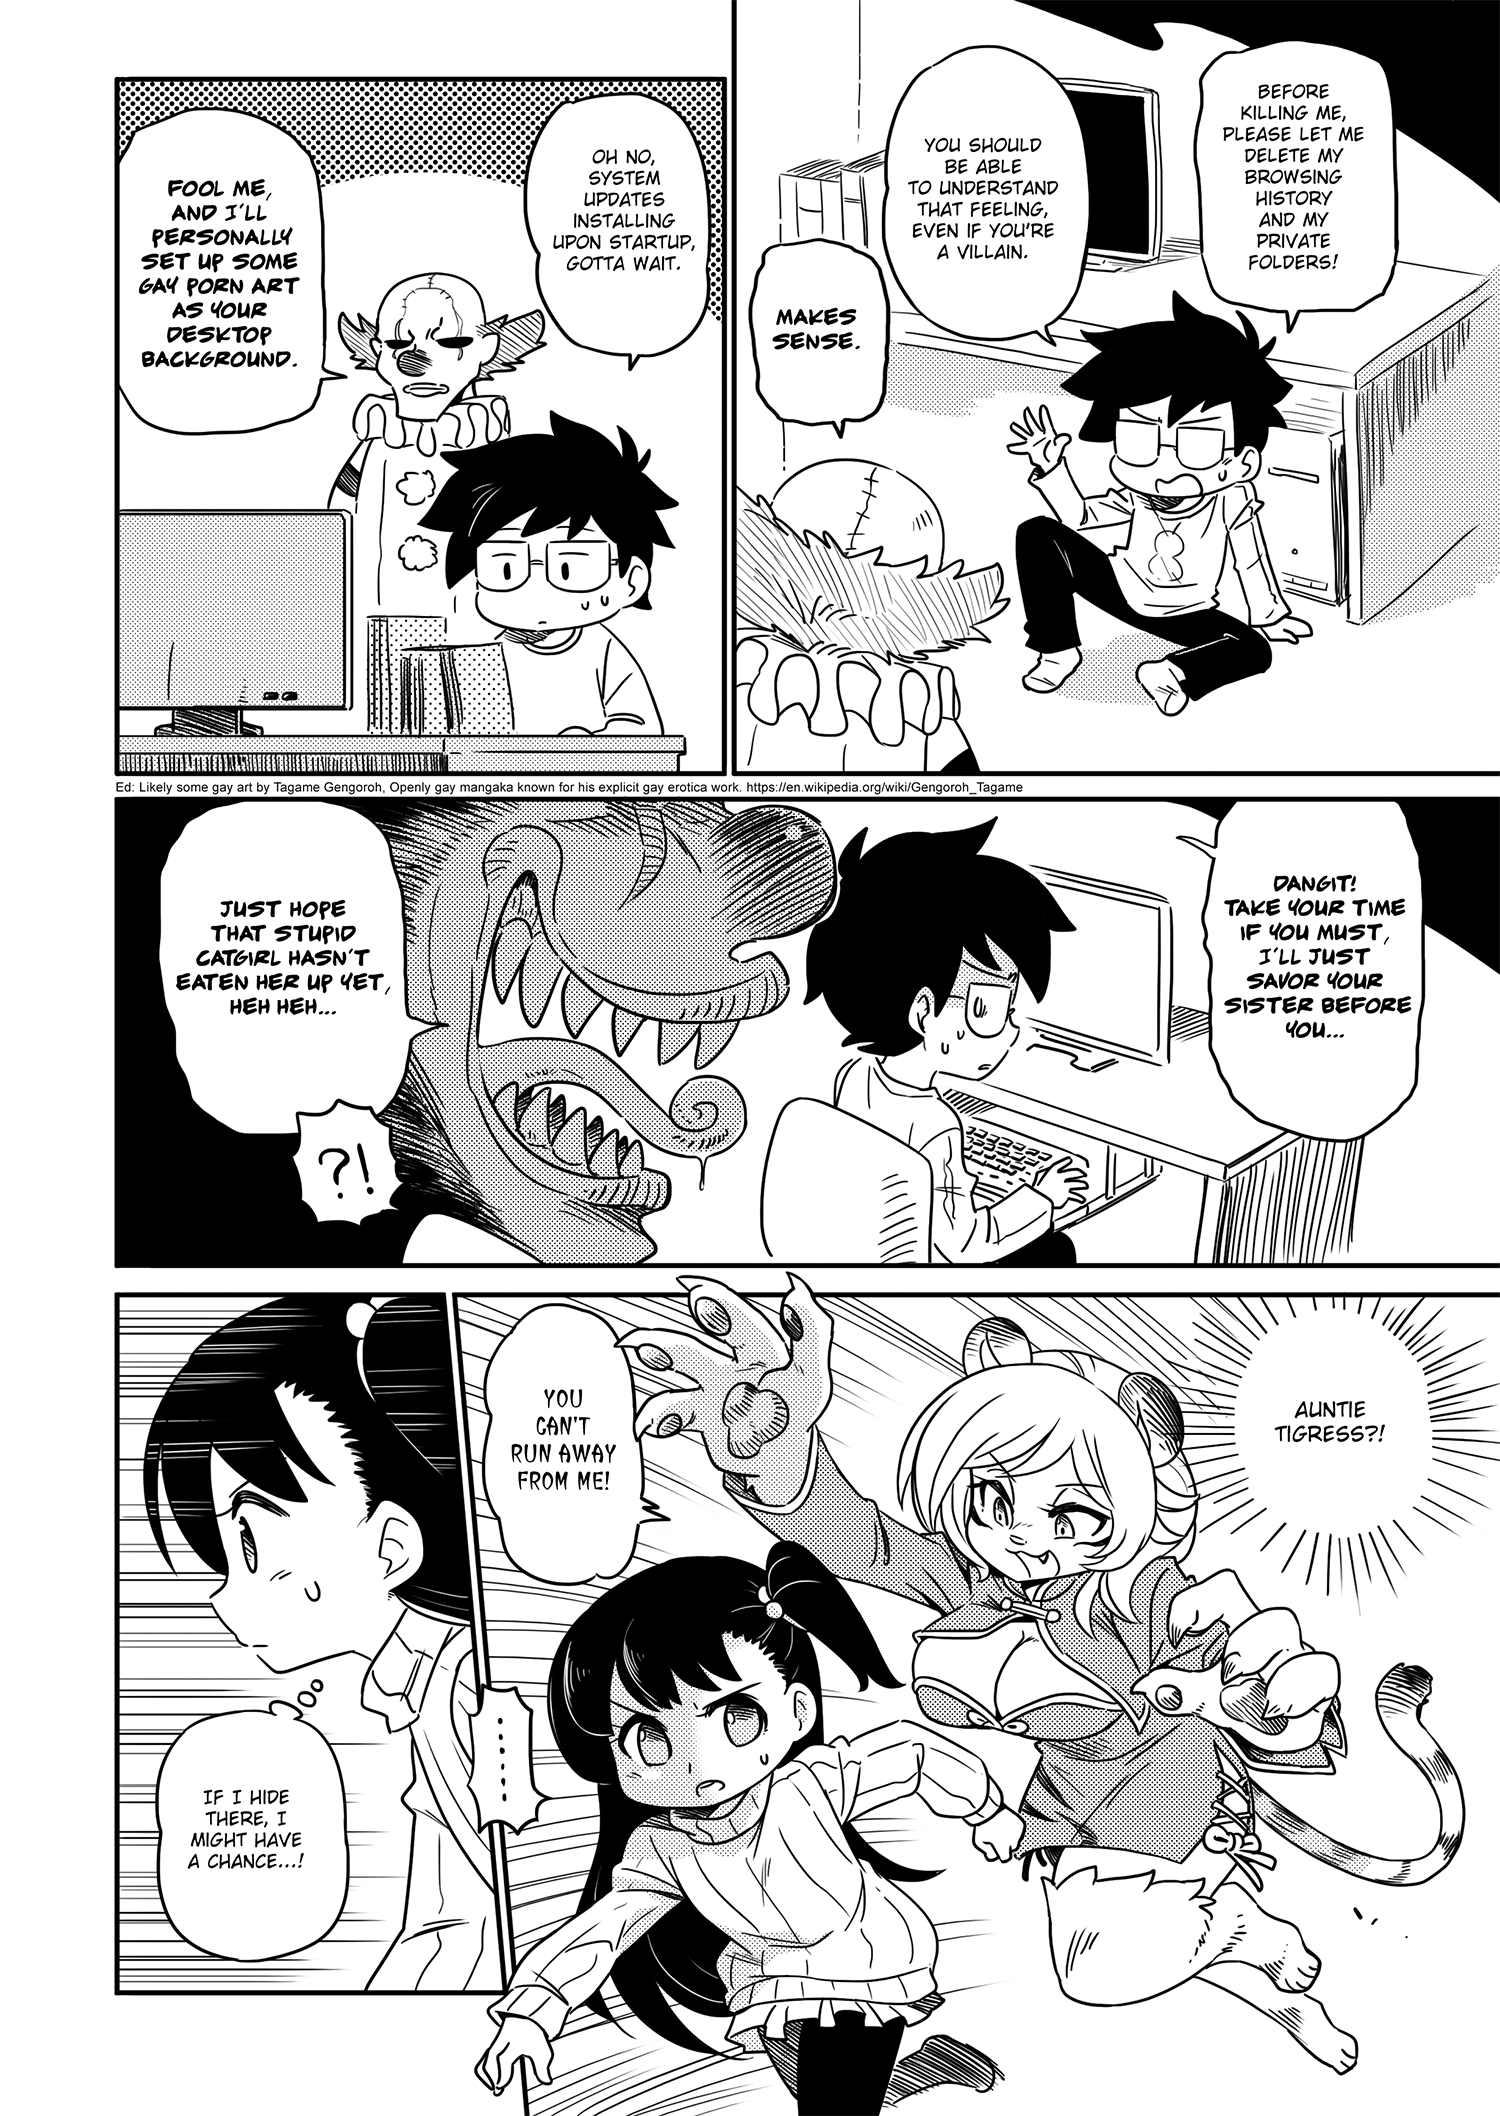 Browsing Manga (comics) on DeviantArt